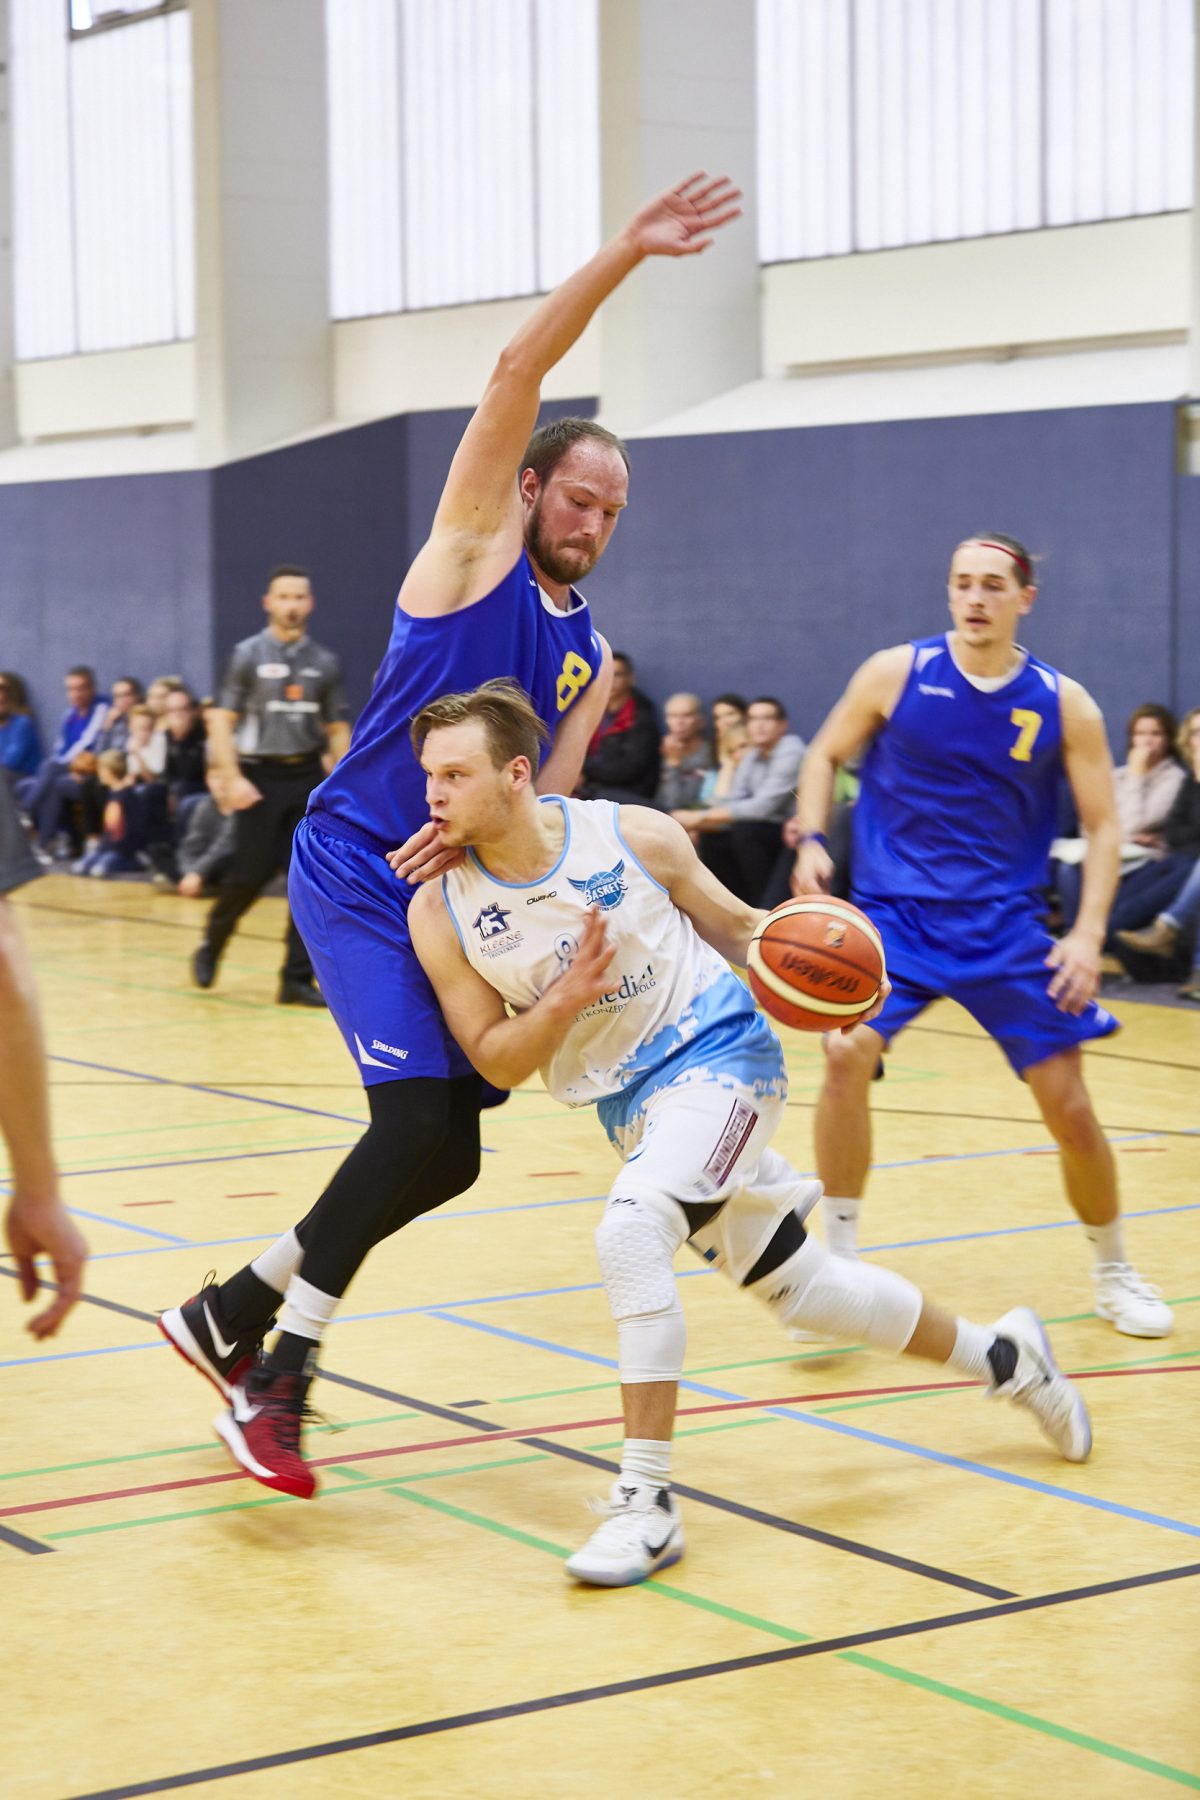 S.O. Medien Baskets empfangen zum Regionalliga-Auftakt die SG Braunschweig